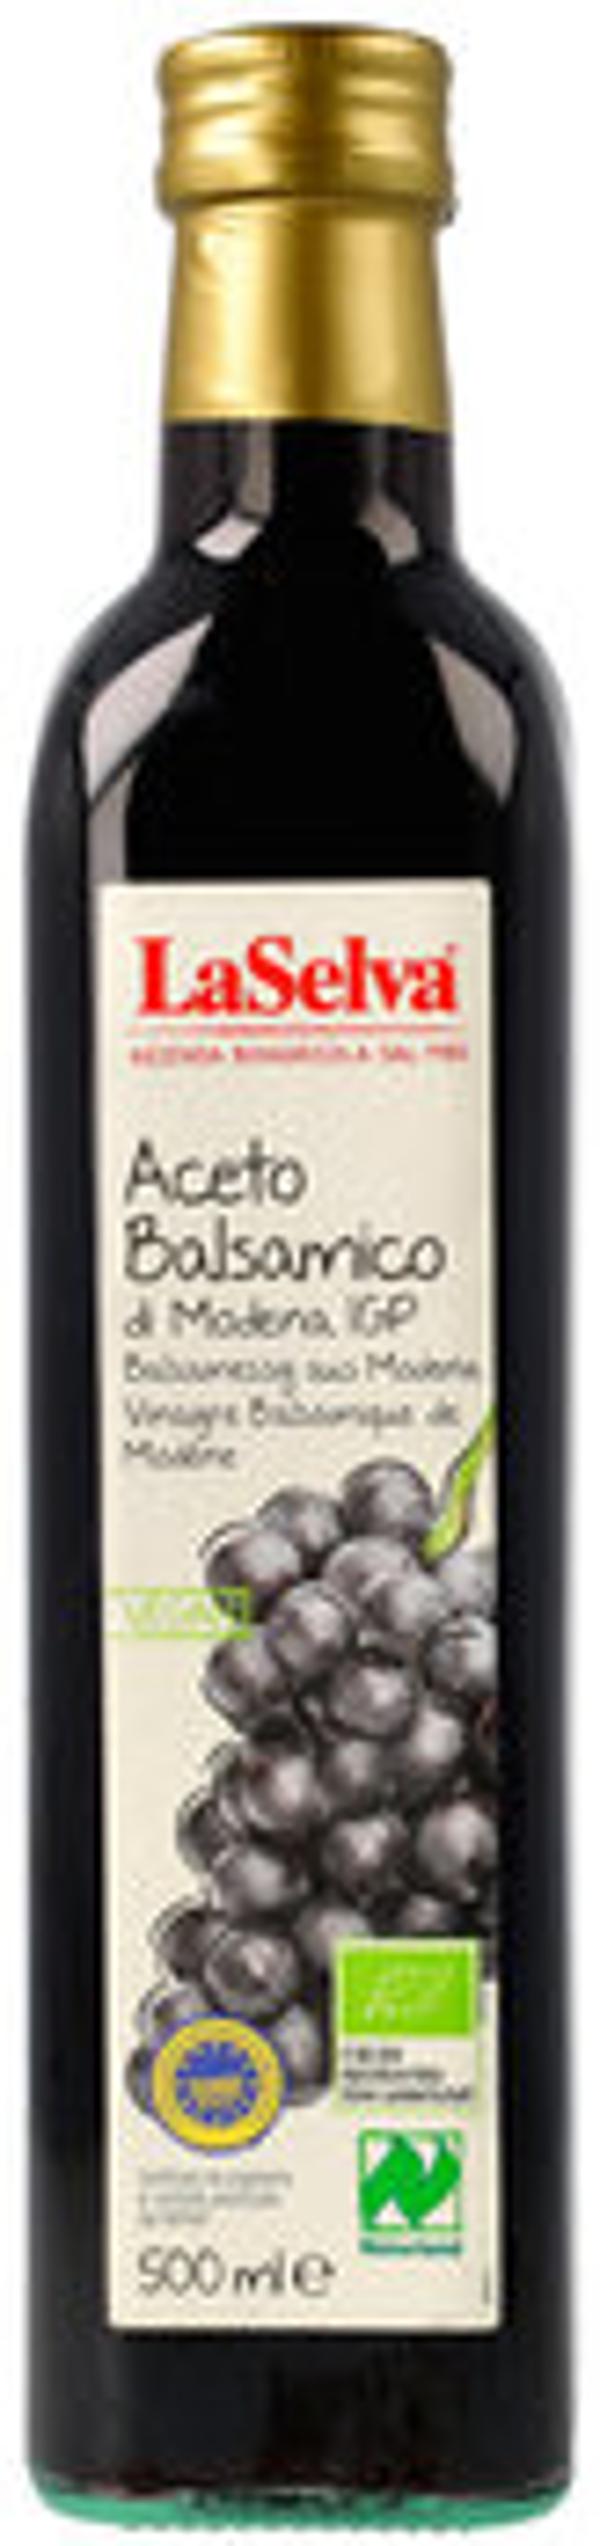 Produktfoto zu Aceto Balsamico di Modena IGP 500ml